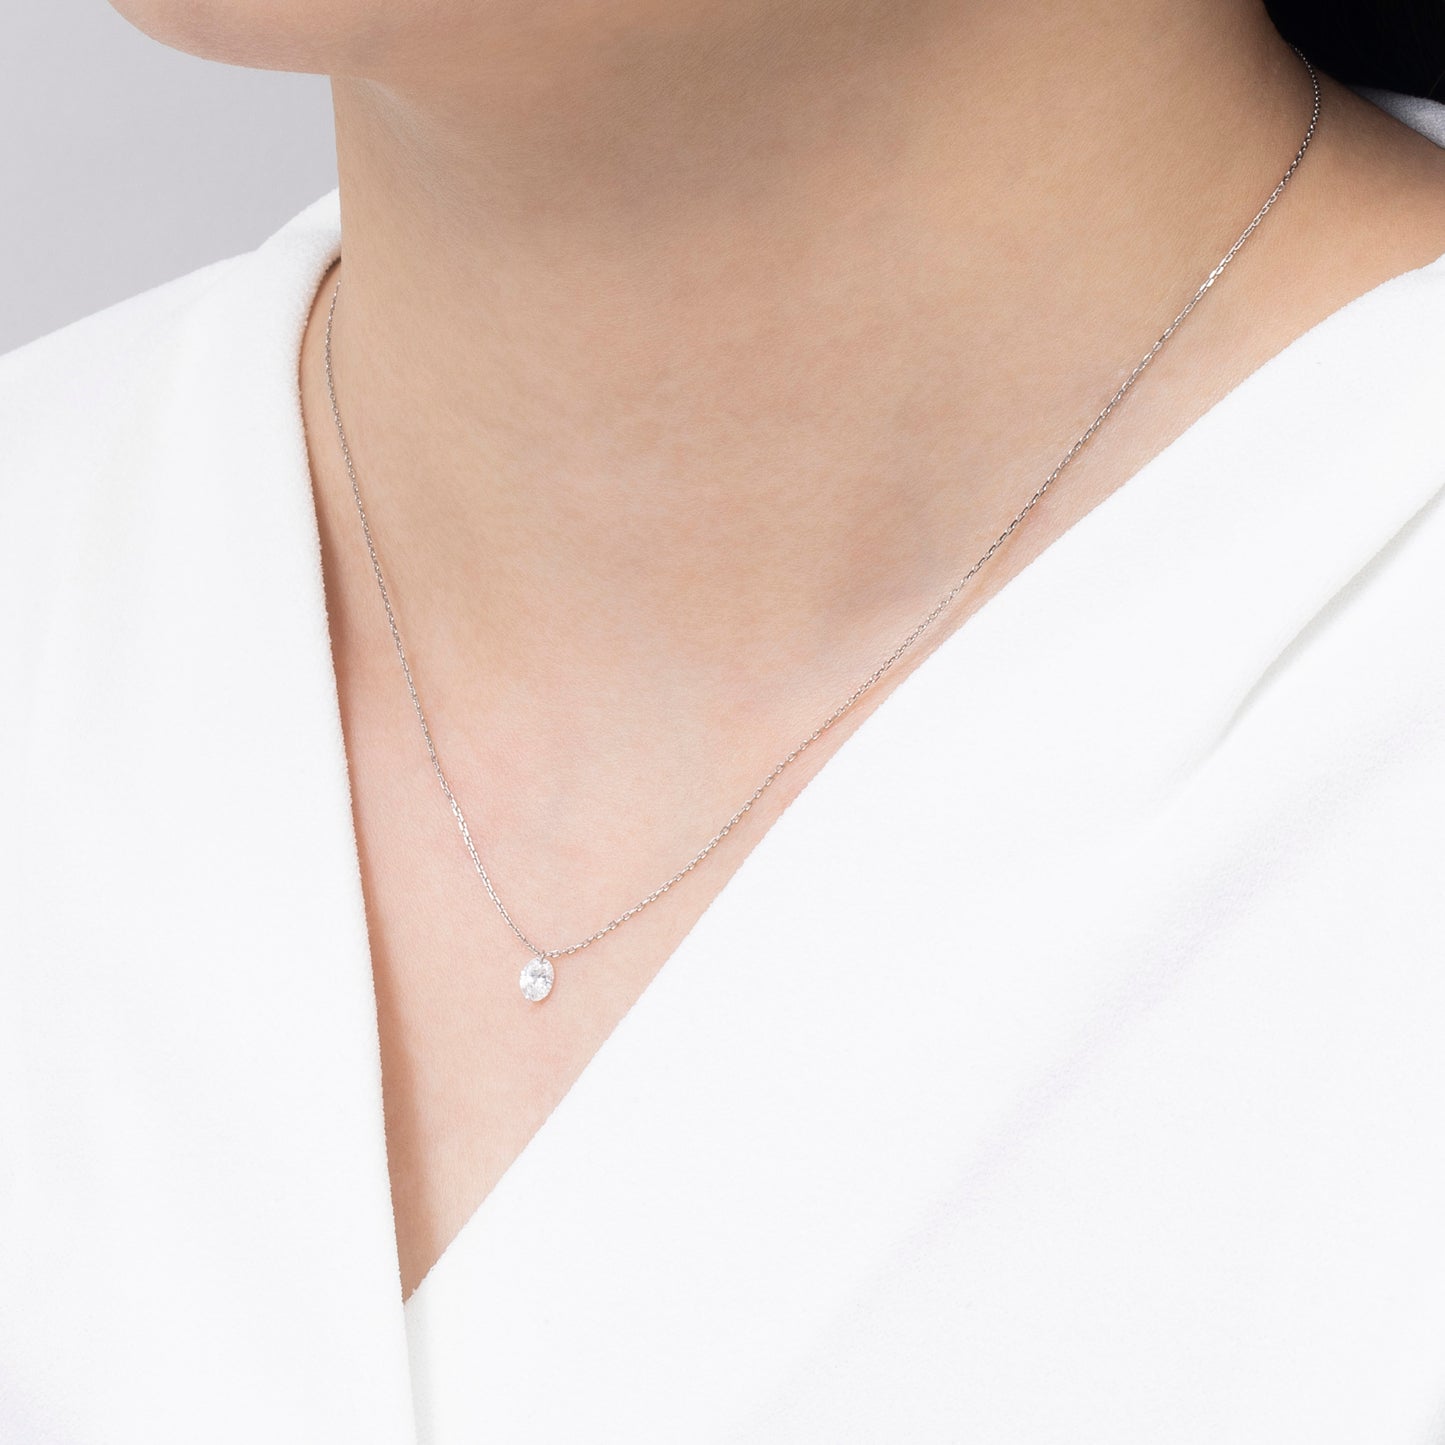 INNOCENCE 1 grain oval necklace / PT850 Platinum / 0.2 carat